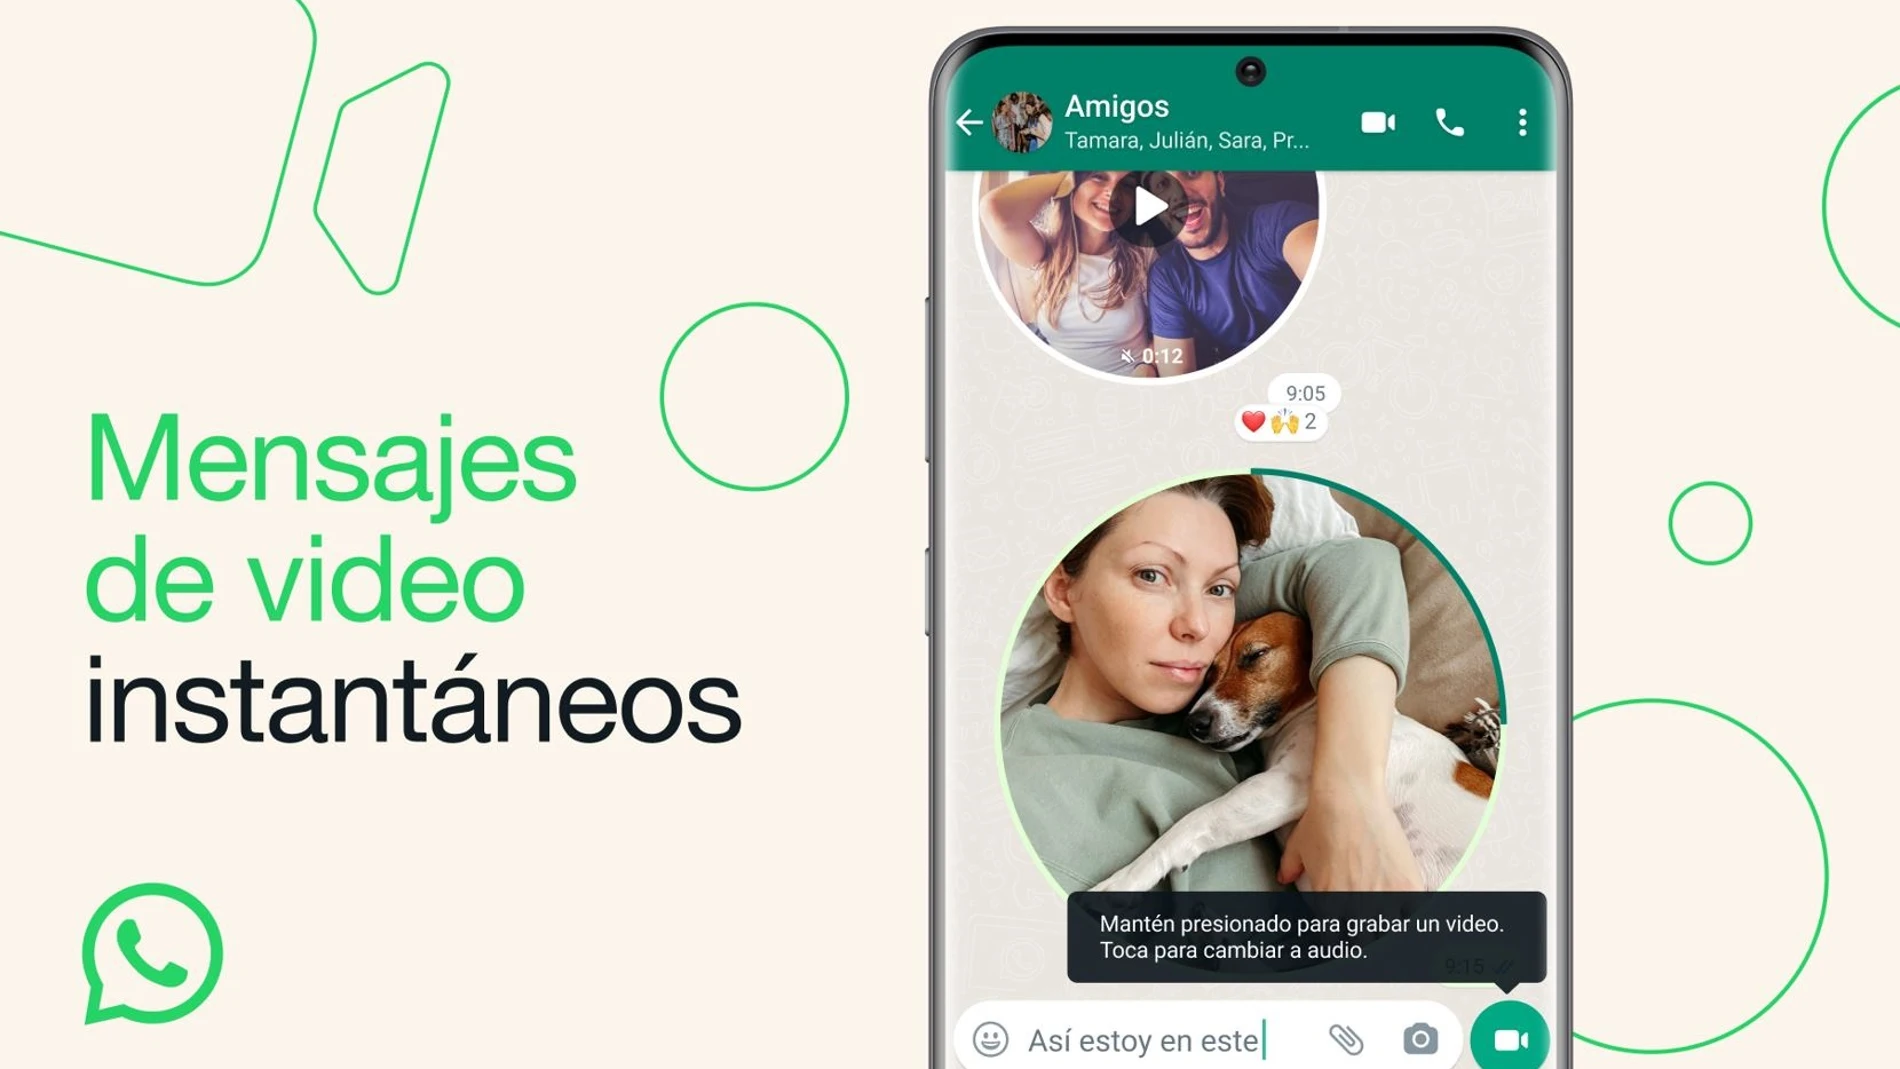 WhatsApp despliega los videomensajes instantáneos, que pueden durar hasta 60 segundos